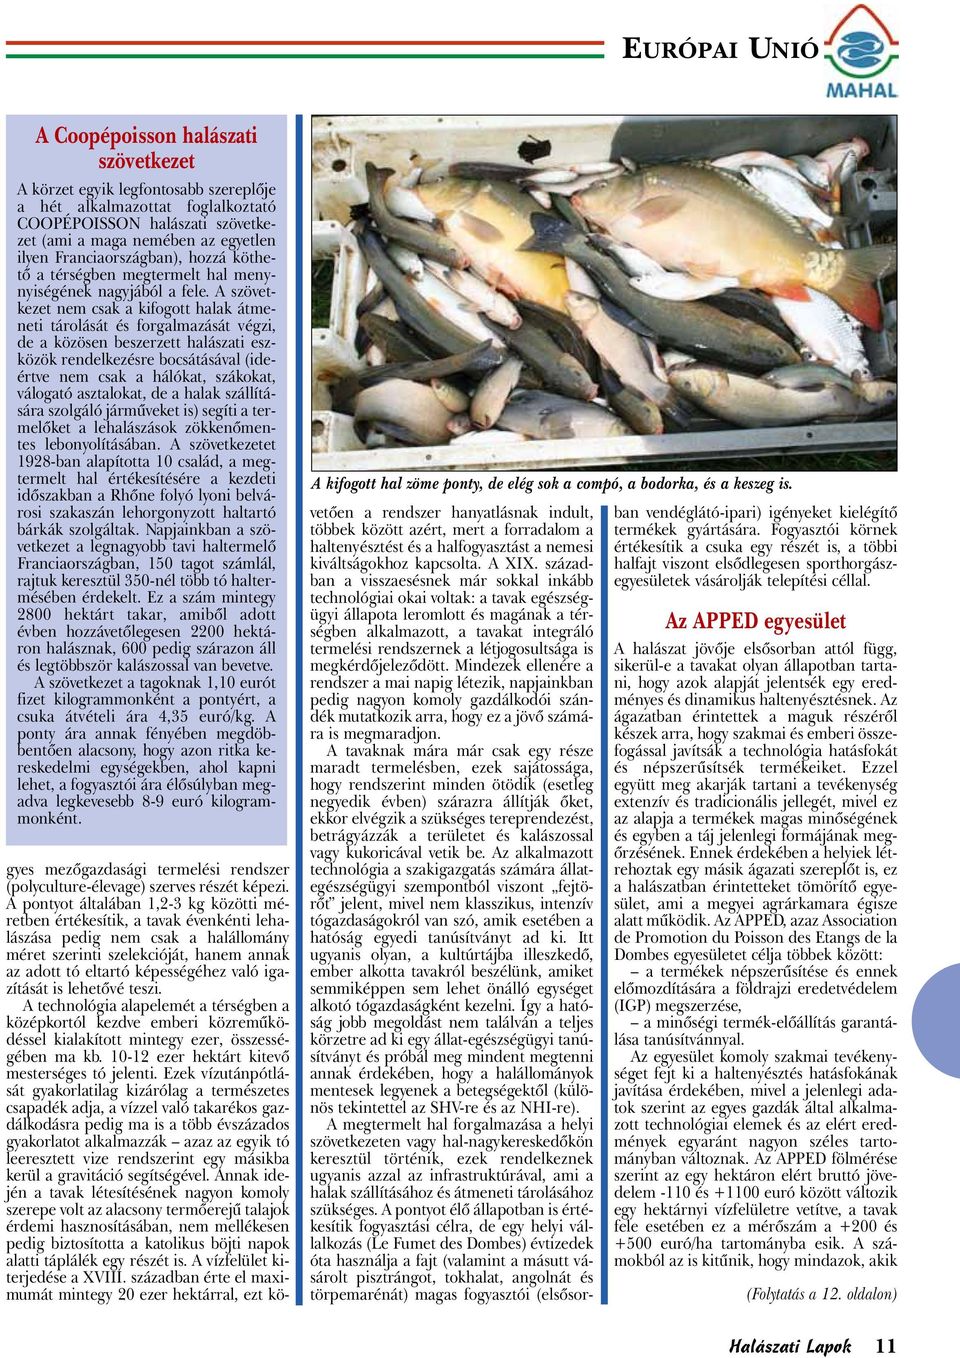 A szövetkezet nem csak a kifogott halak átmeneti tárolását és forgalmazását végzi, de a közösen beszerzett halászati eszközök rendelkezésre bocsátásával (ideértve nem csak a hálókat, szákokat,